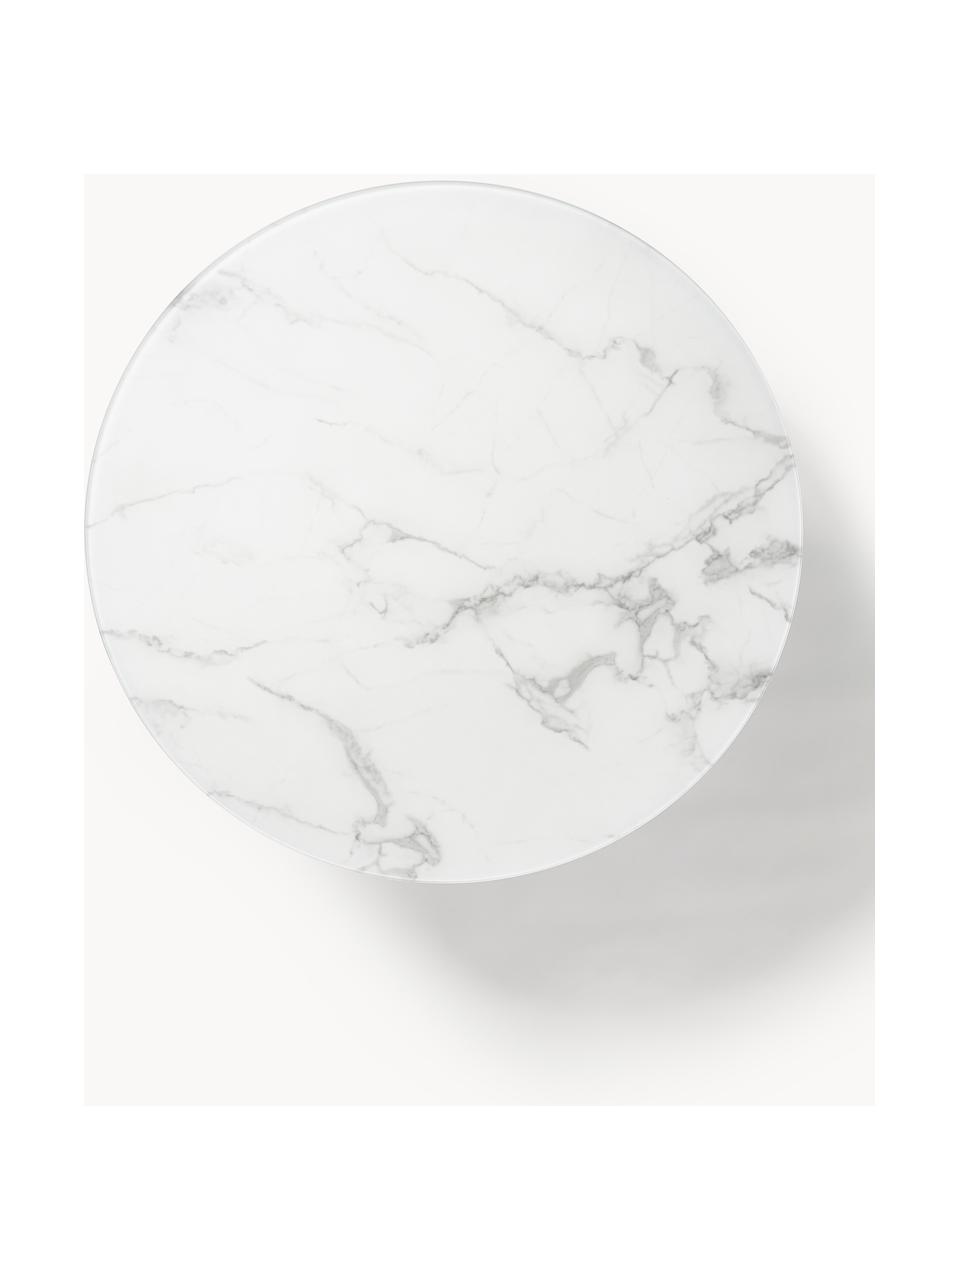 Tavolino rotondo XL da salotto con piano in vetro effetto marmo Antigua